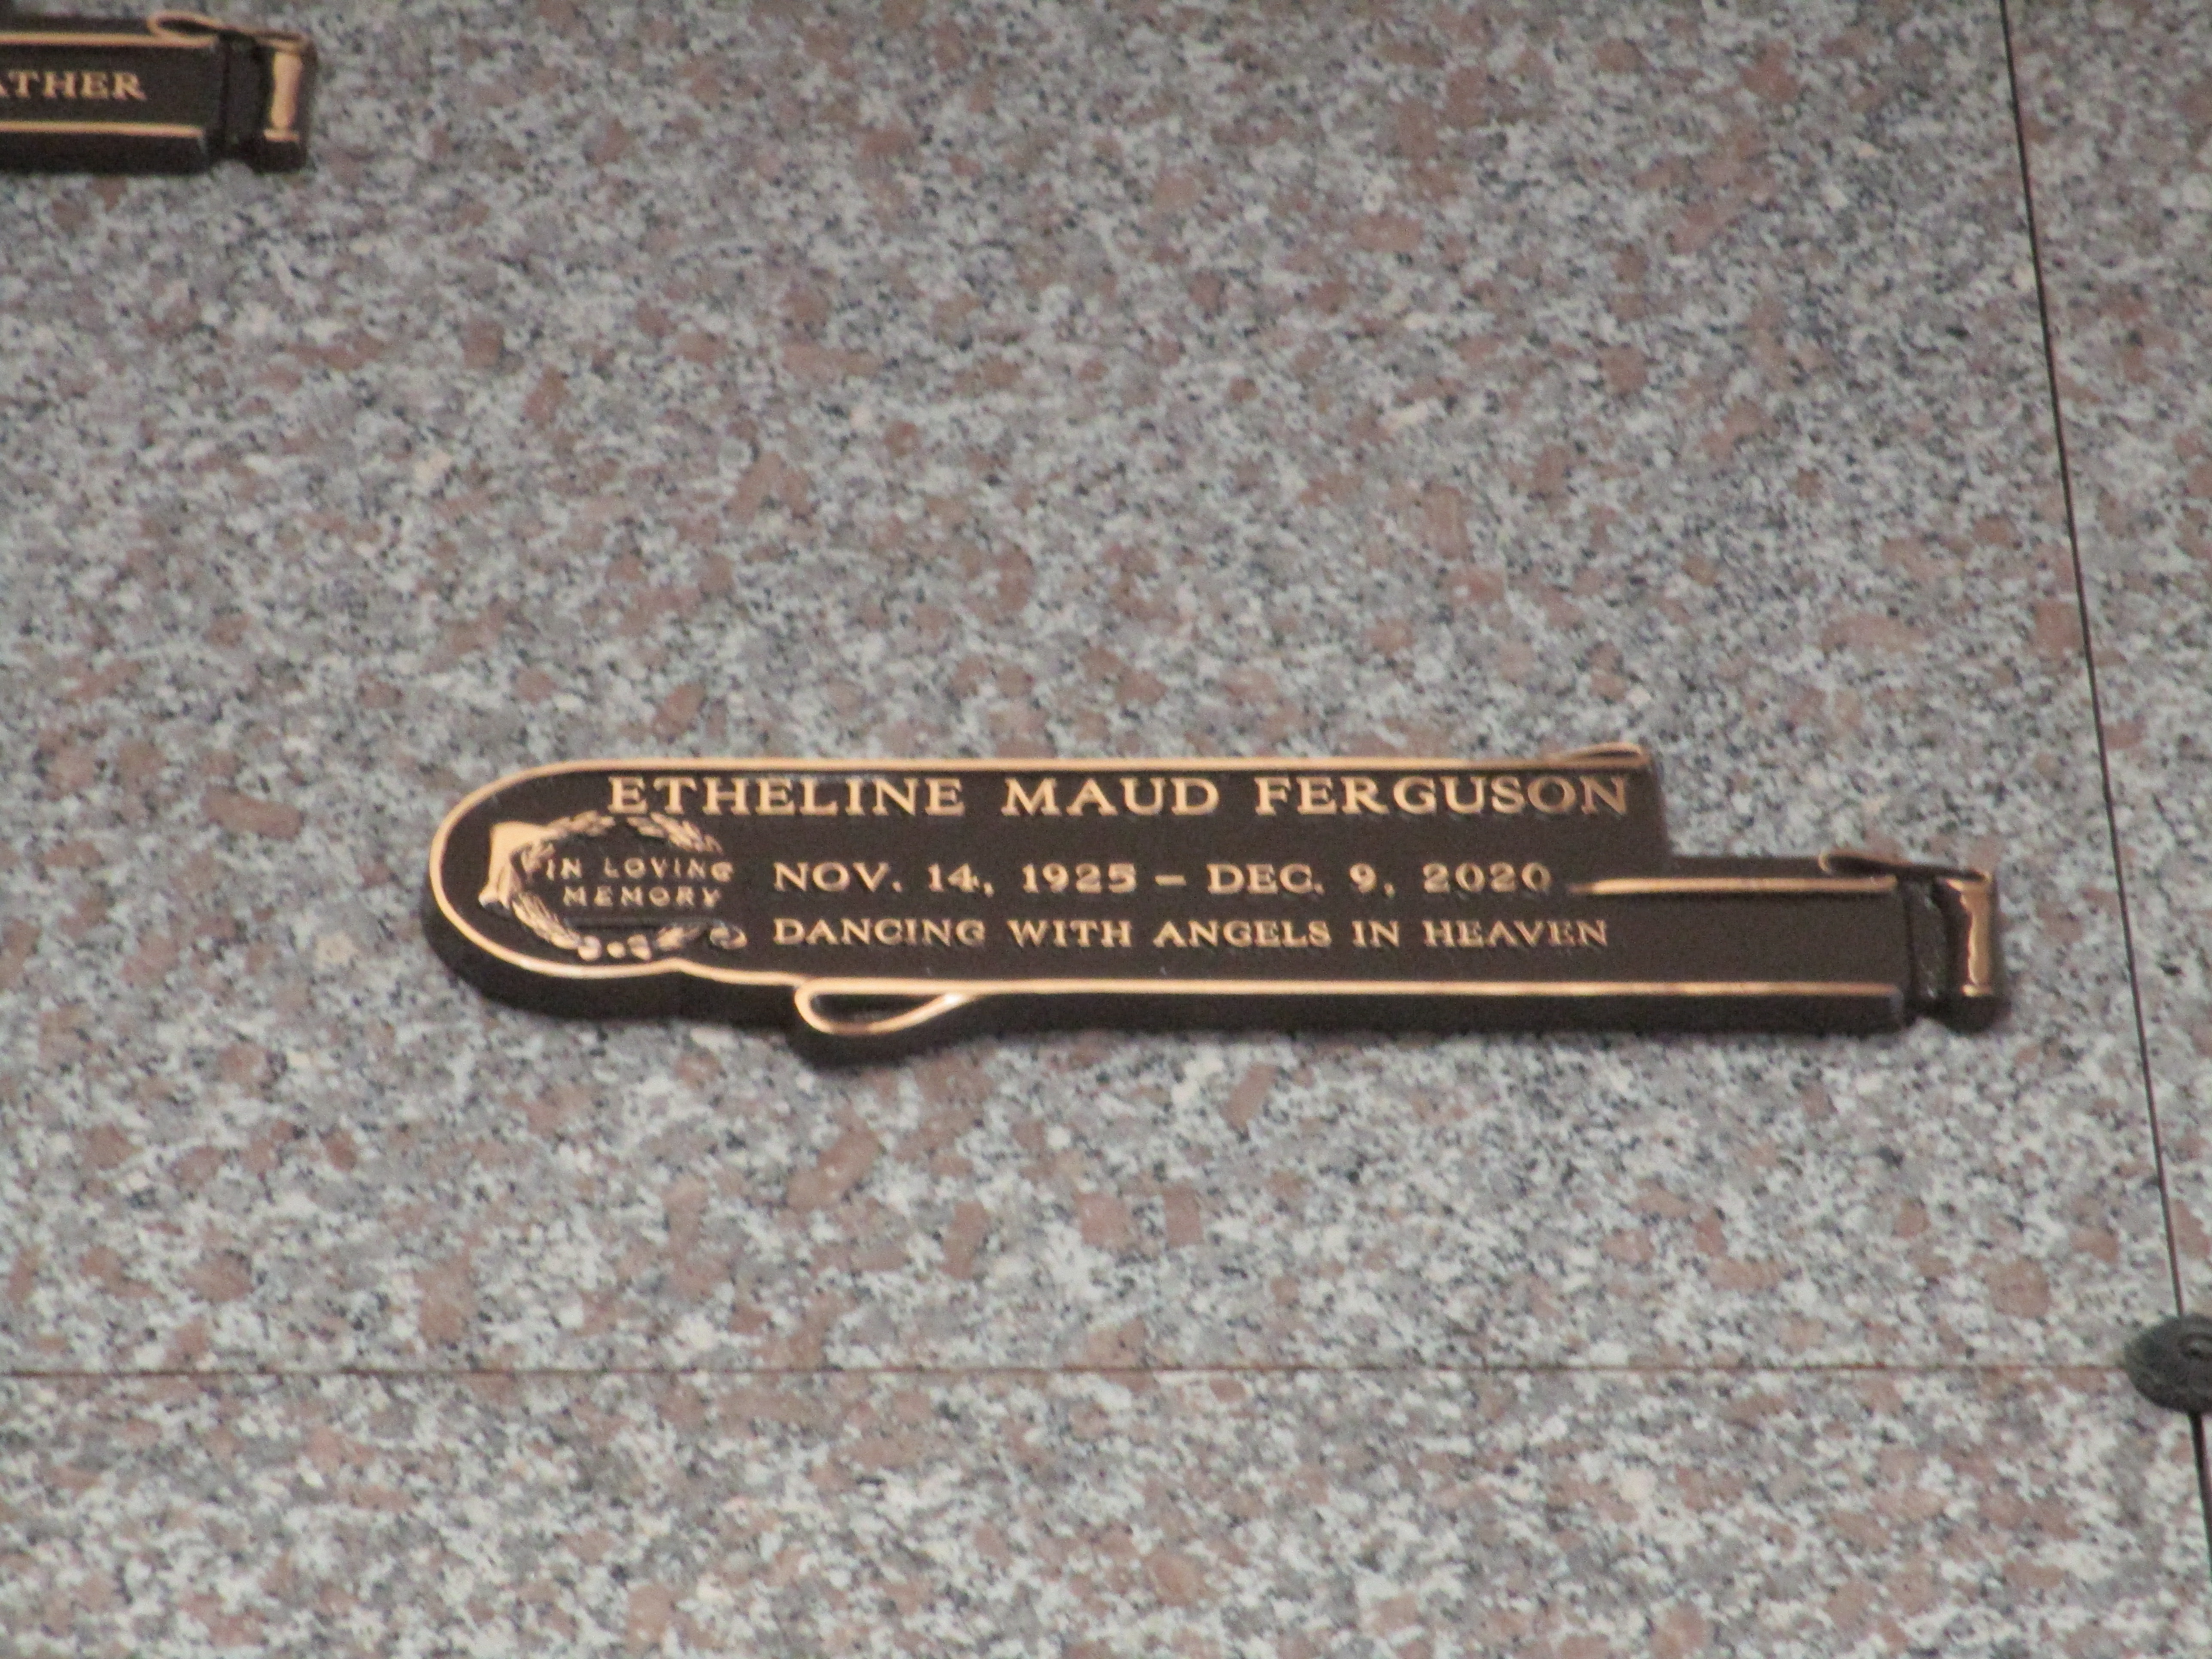 Etheline Maud Ferguson